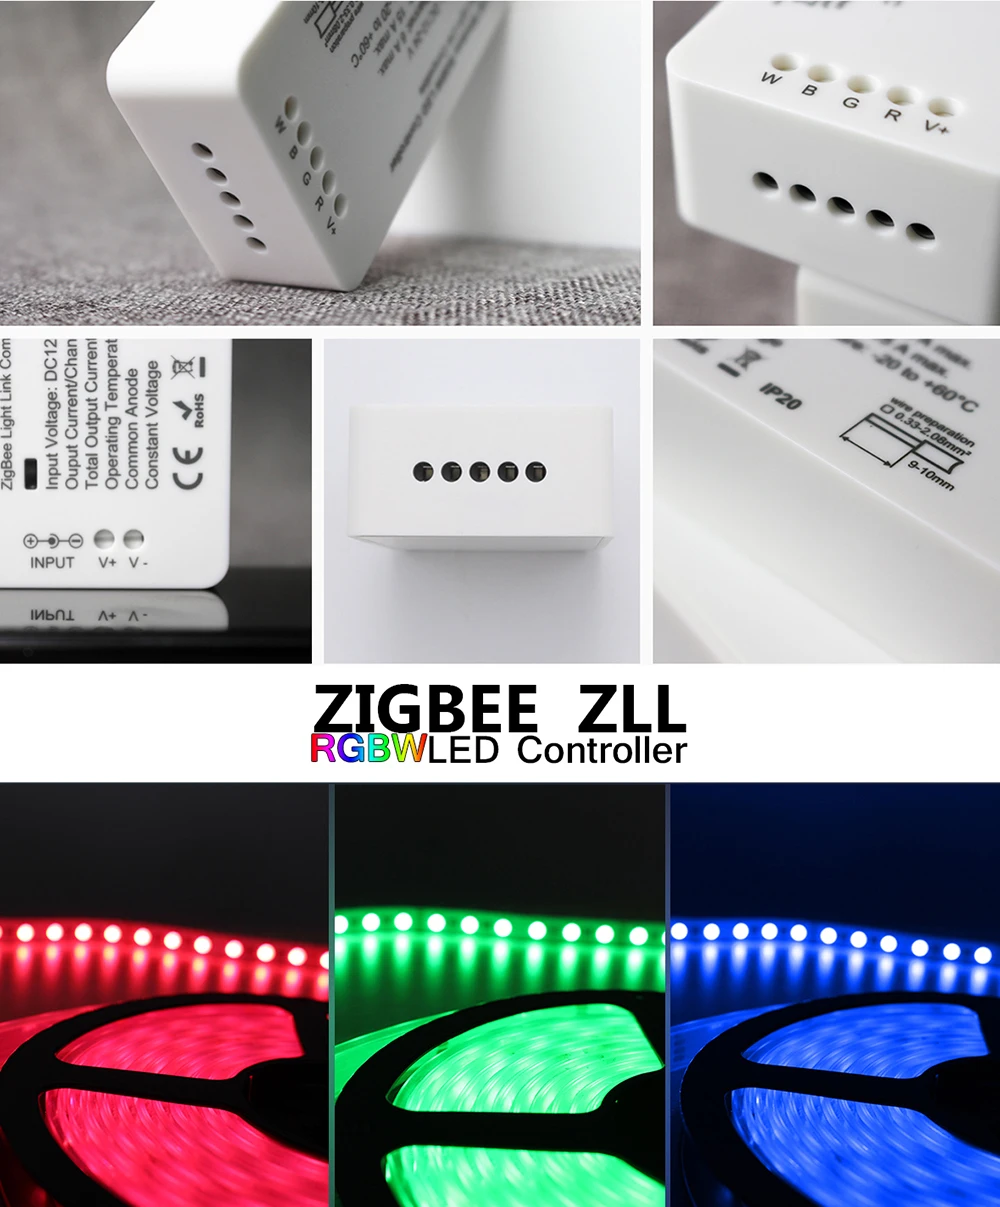 ZLL RGBW Led лента управления Лер DC12V/24 В Светодиодная лента ZigBee контроллер умный дом приложение управление DC12V-24V светодиодные лампы Srtip